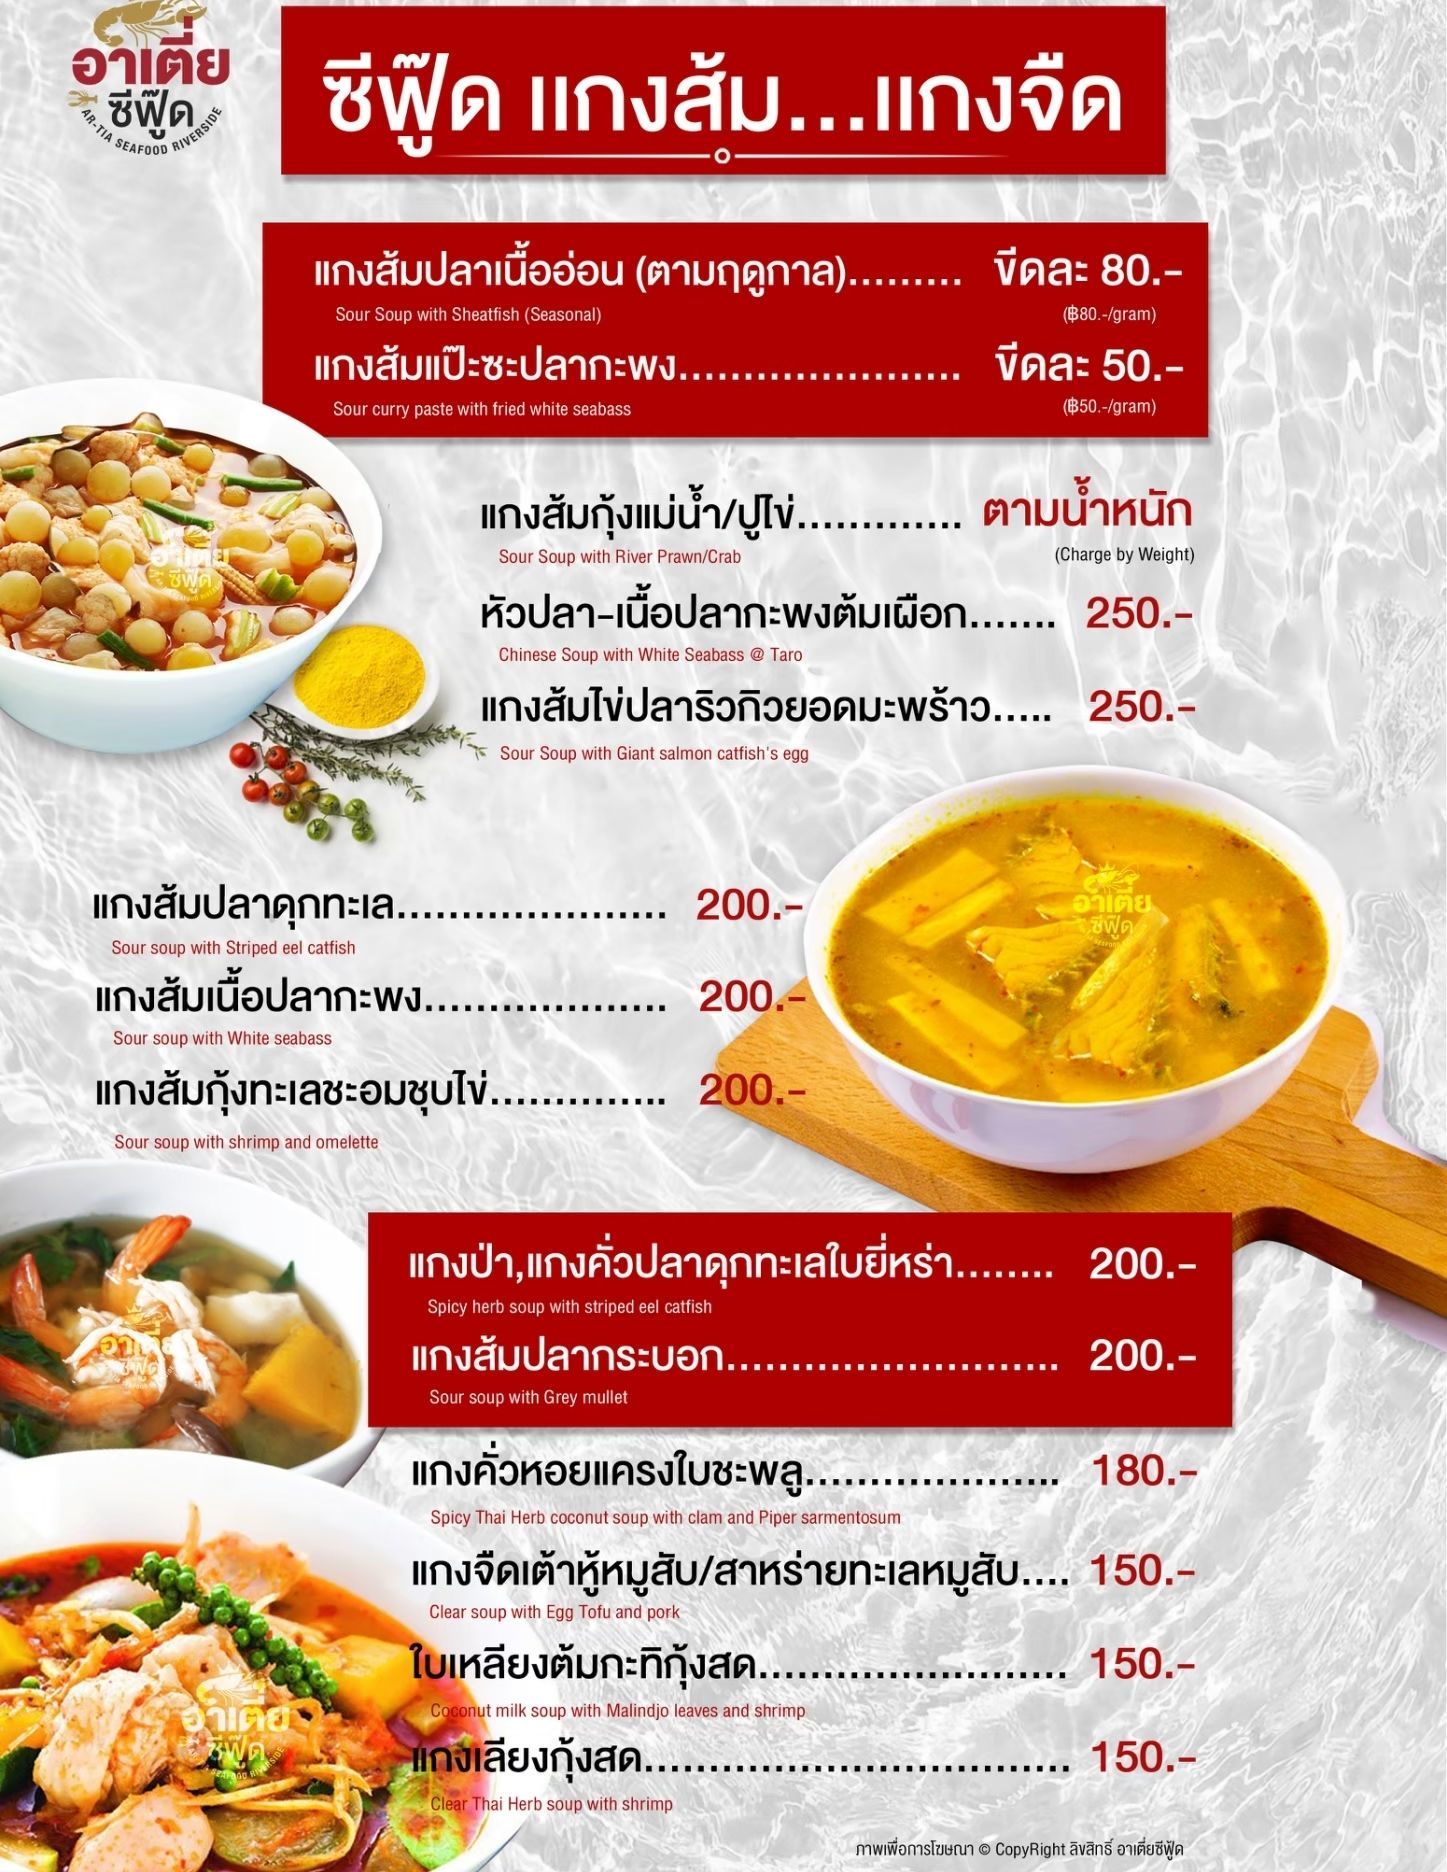 เมนูอาหารไทย ร้านอาเตี่ยซีฟู้ด ร้านอาหาร สุราษฏร์ธานี แกงส้ม หัวปลาต้มเผือก แกงคั่วหอย แกงป่า แกงคั่วปลาดุกทะเล